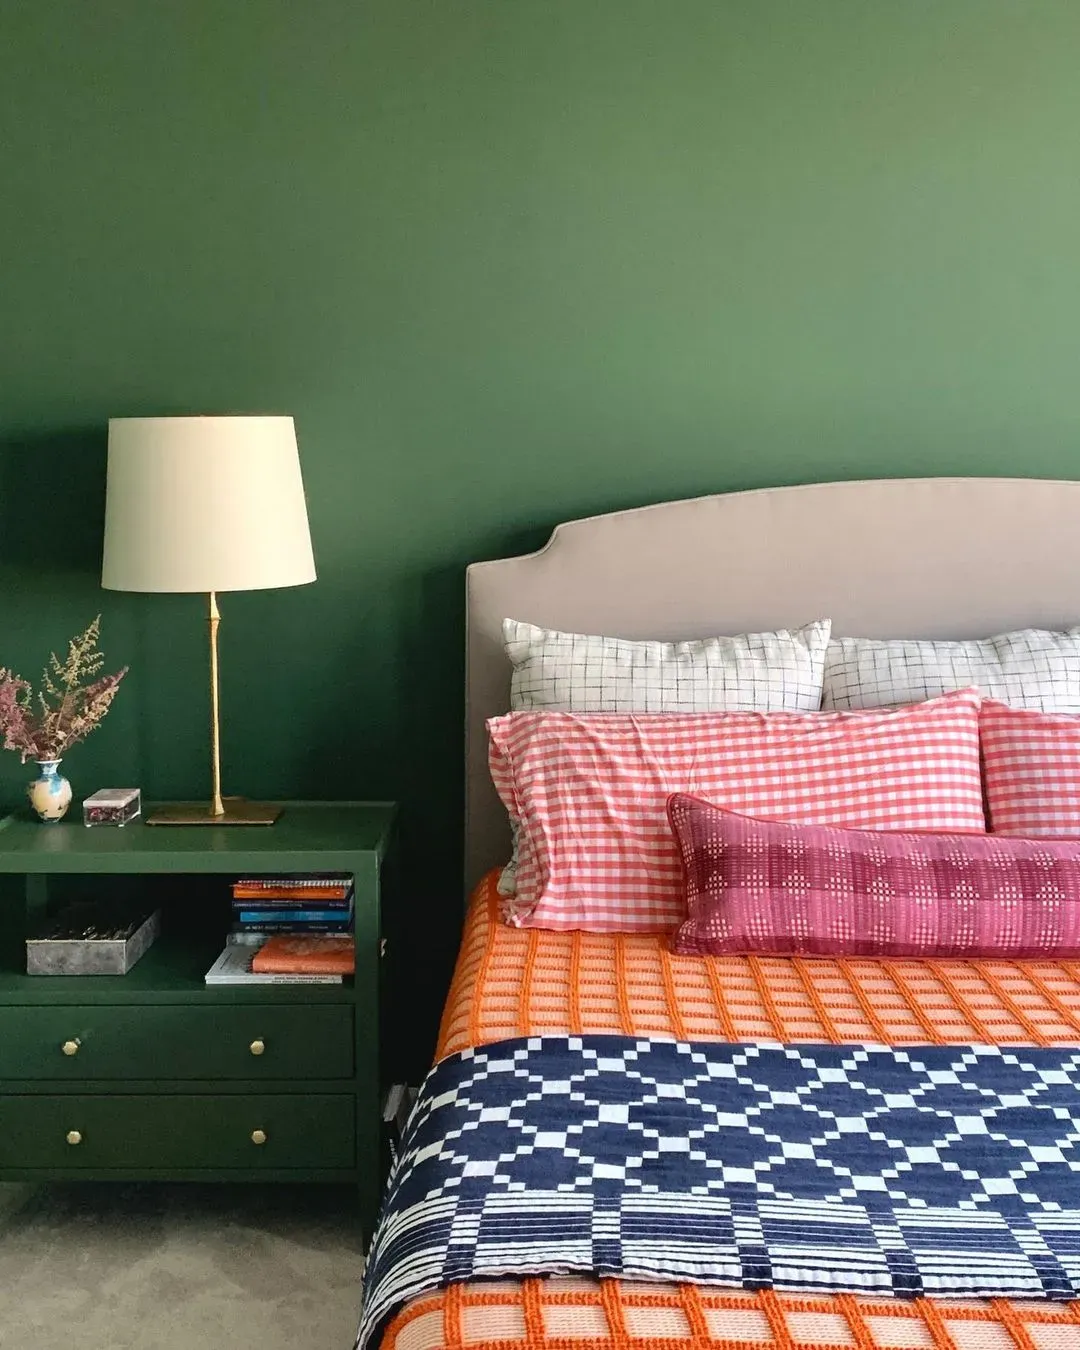 Duck Green bedroom paint